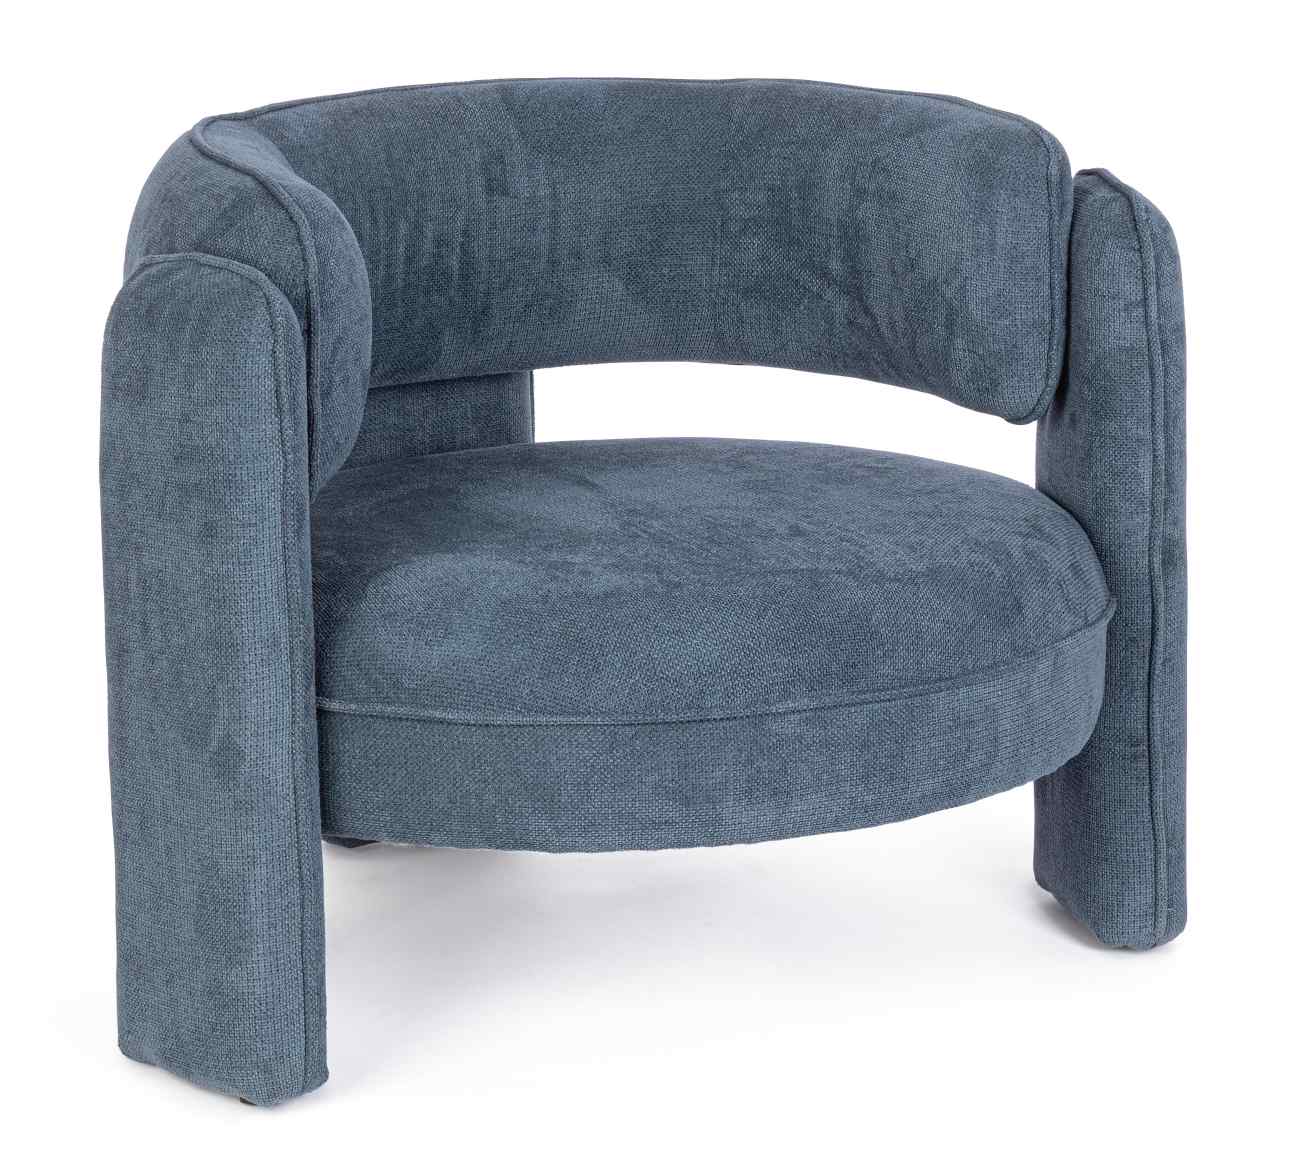 Der Sessel Aisha überzeugt mit seinem modernen Stil. Gefertigt wurde er aus Stoff, welcher einen blauen Farbton besitzt. Der Sessel besitzt eine Sitzhöhe von 44 cm.